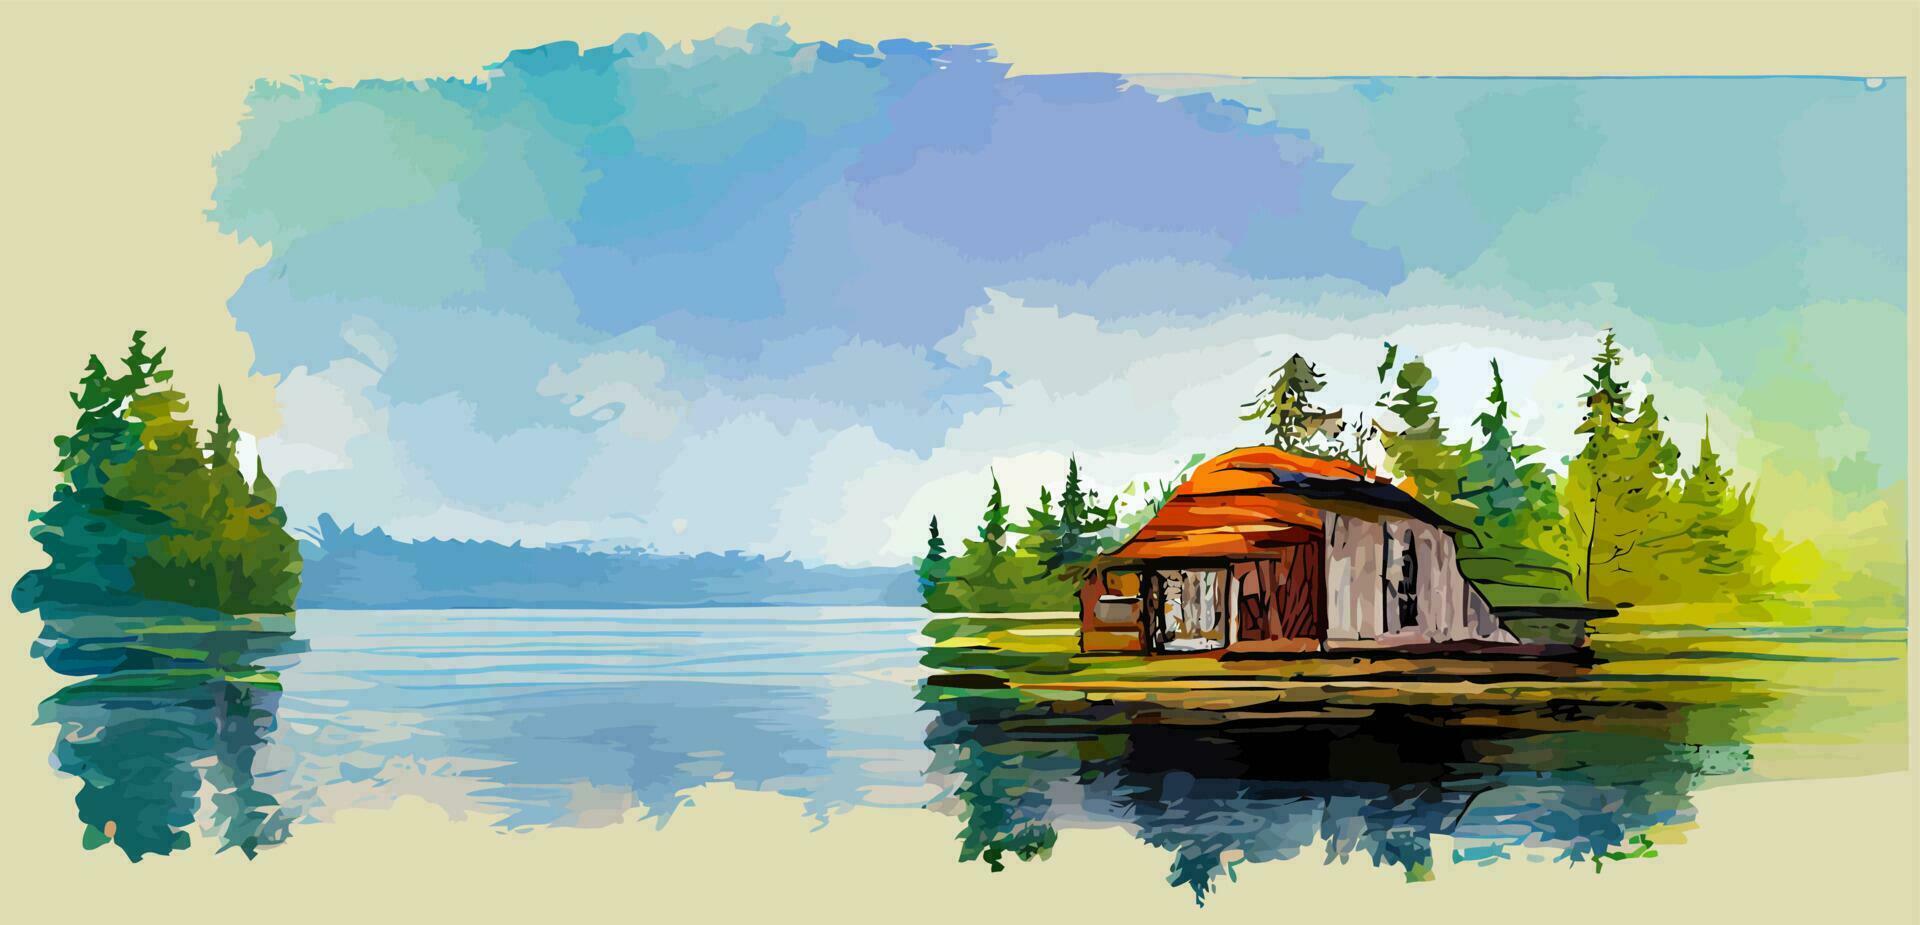 Illustrationsvektorgrafik des Seehauses auf Aquarellmalereiart gut für den Druck auf Postkarte, Poster oder Hintergrund vektor